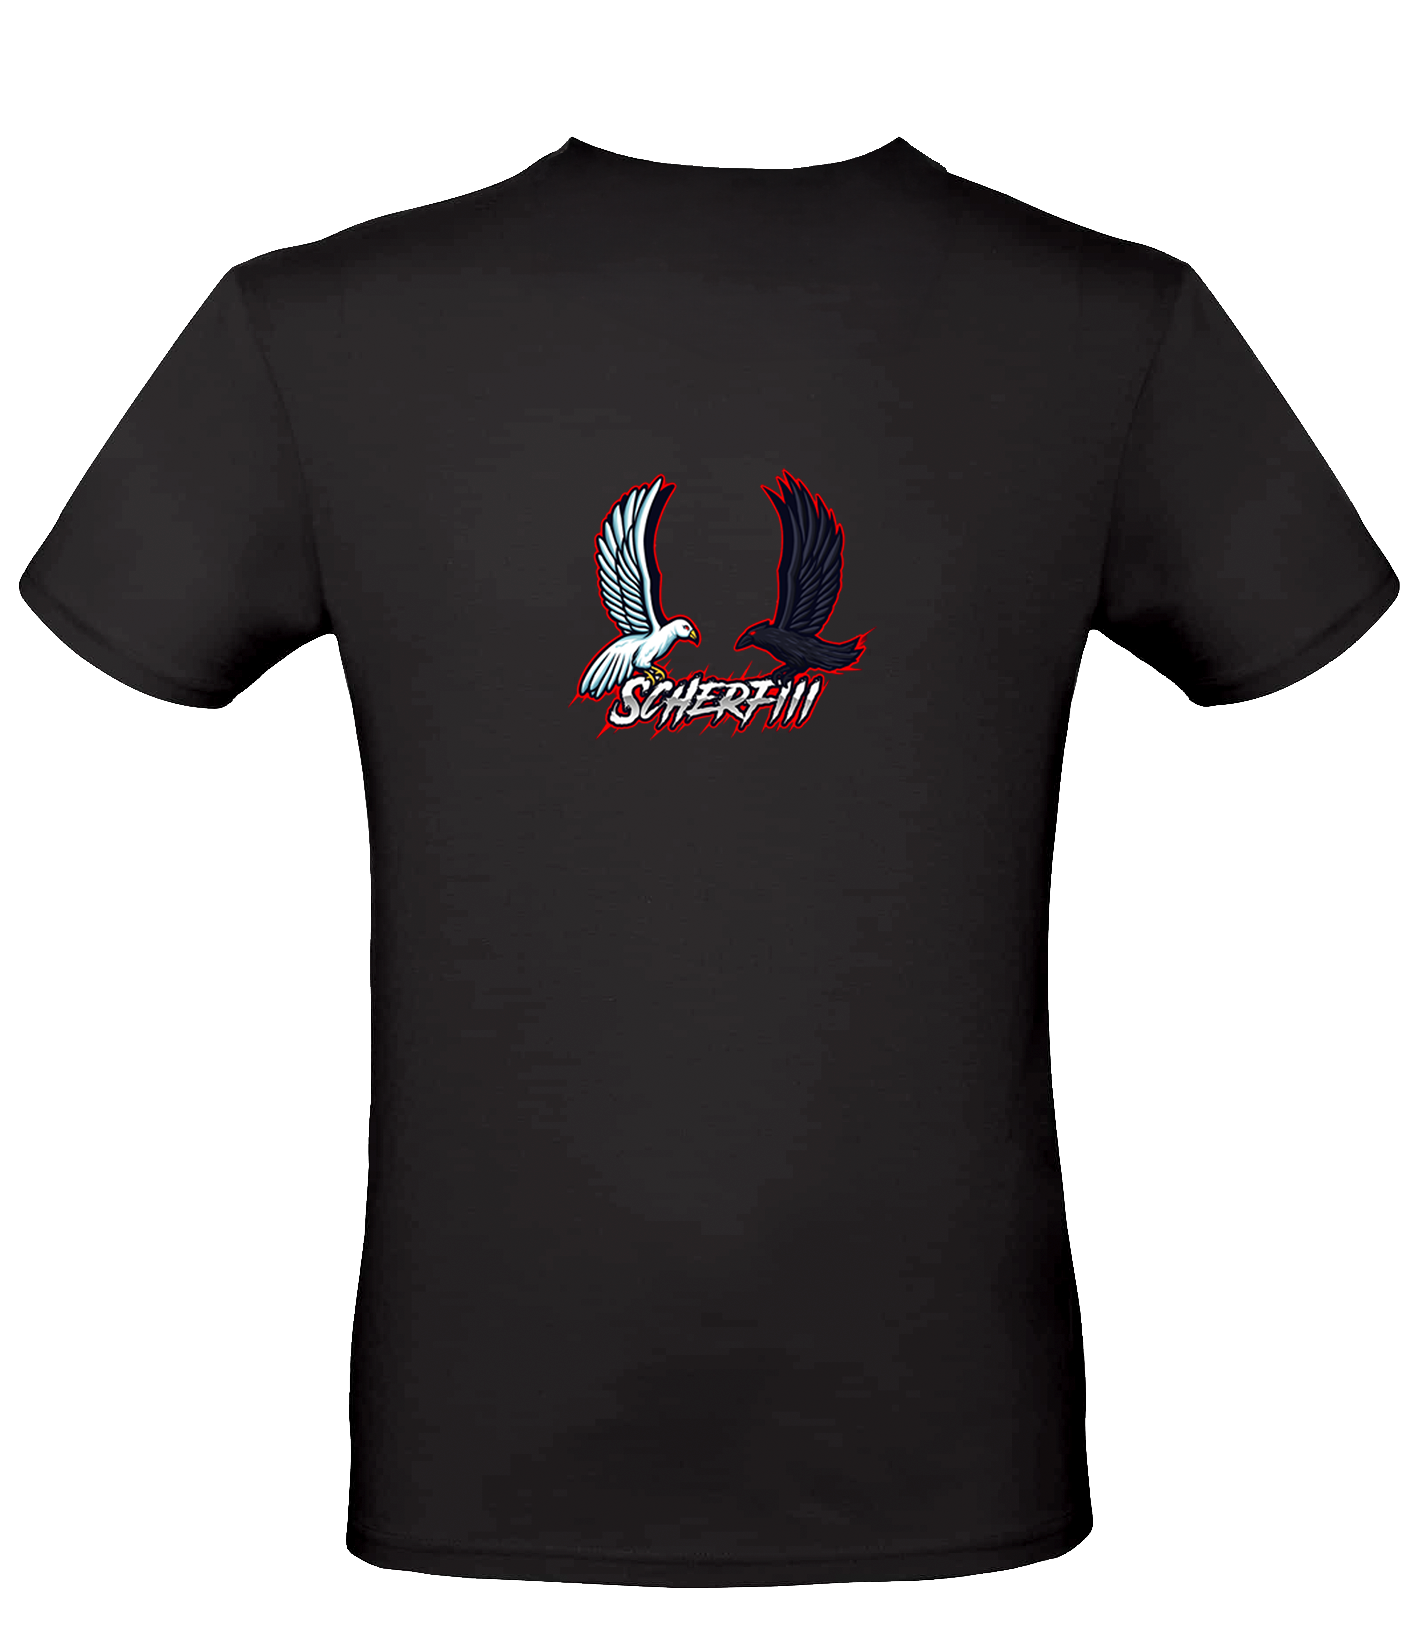 Scherfiii -  T-Shirt